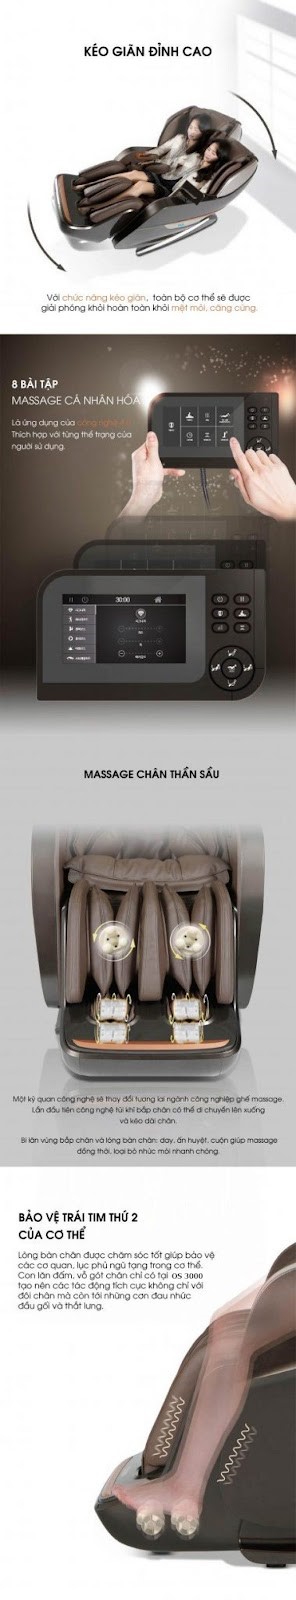 Công nghệ kéo giãn ghế massage OKINAWA OS 9000 ( BLACK )